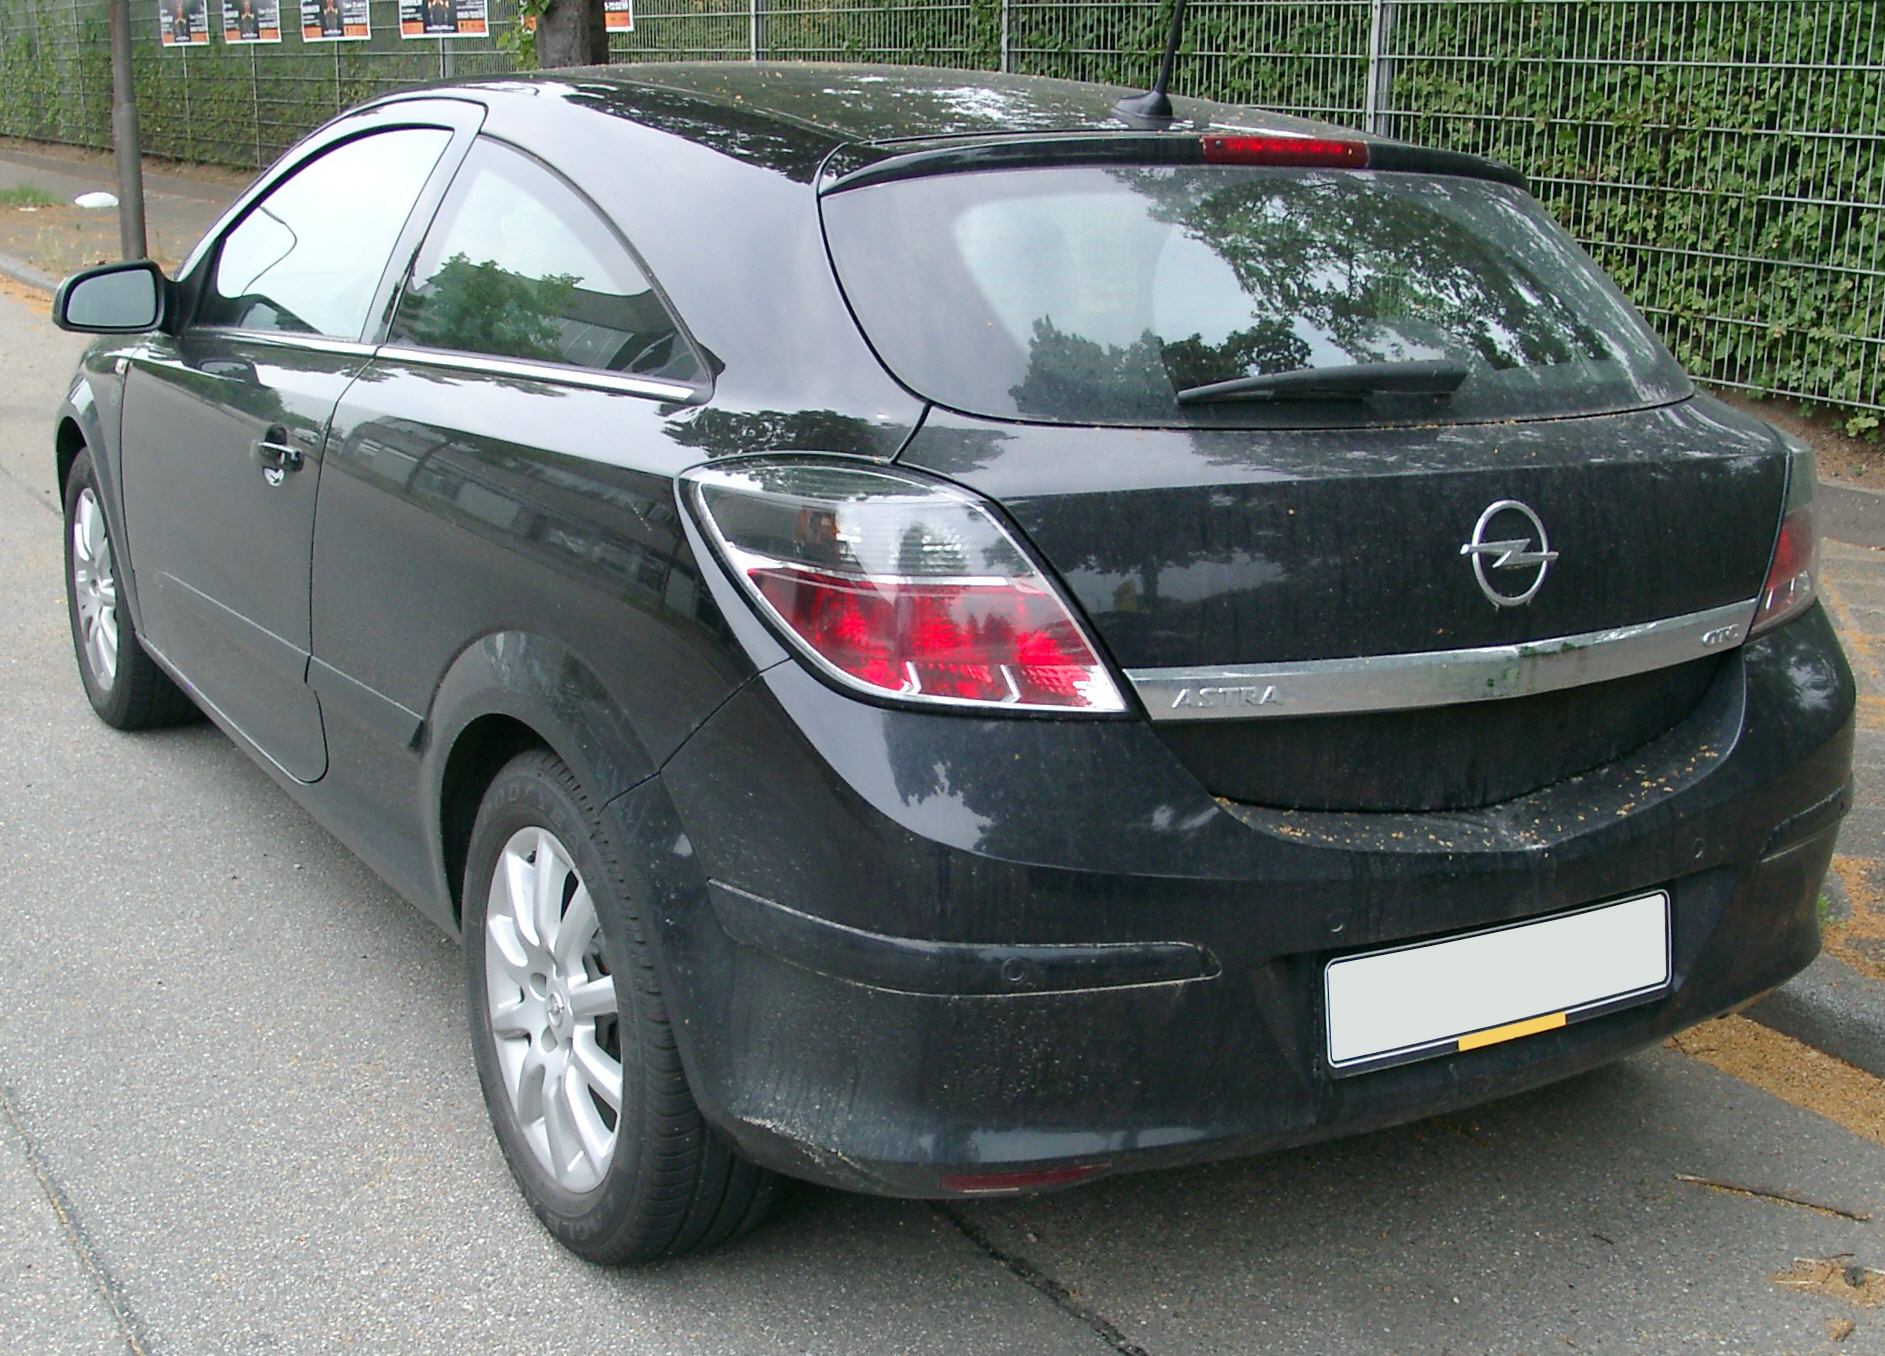 File:Opel Astra GTC rear 20070609.jpg